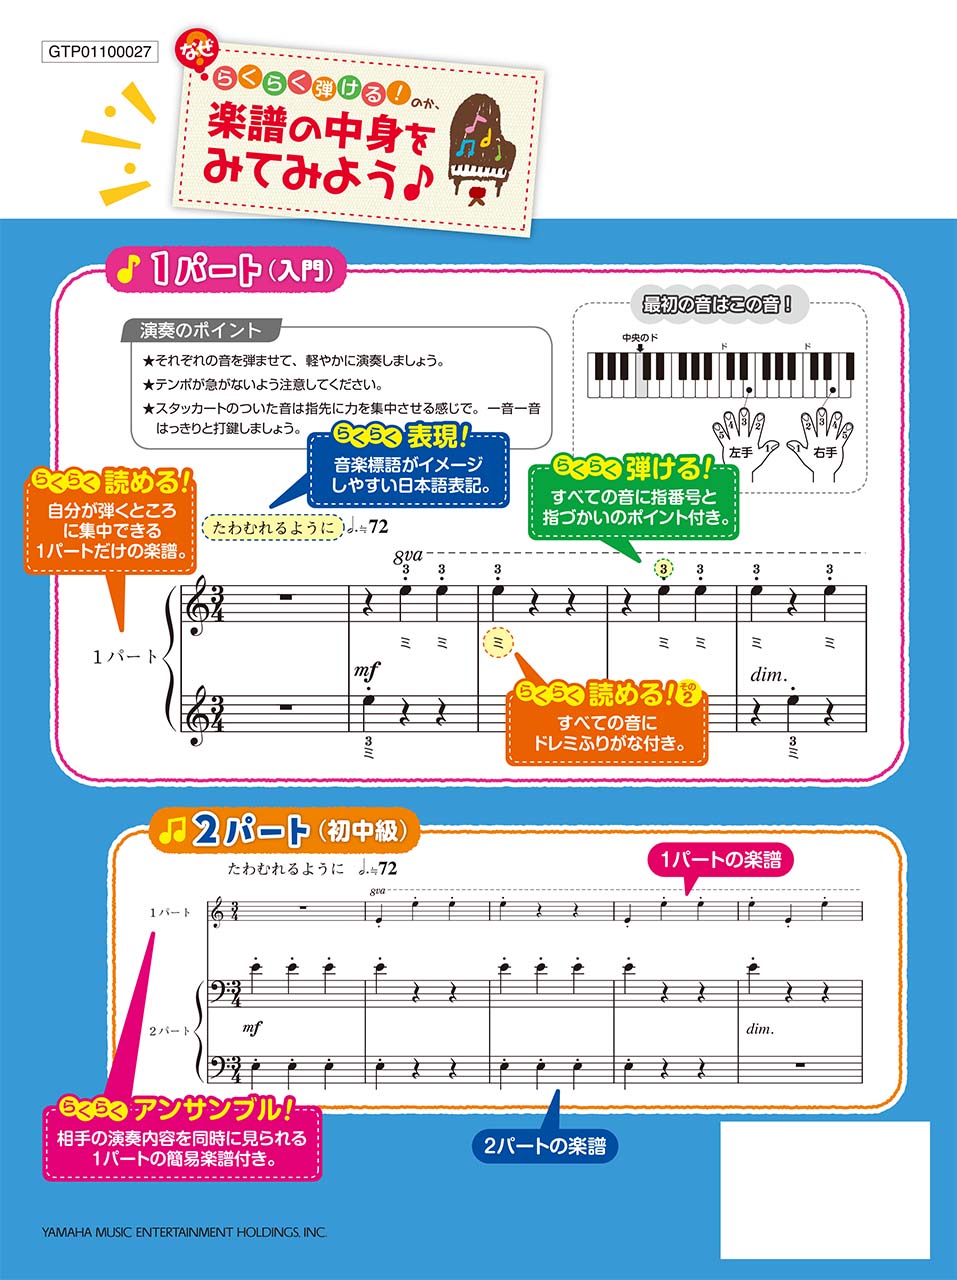 ヤマハ 入門 初中級 らくらく弾ける ピアノ連弾 ピアノで奏でたい定番曲 1パートはドレミふりがな付き 楽譜 ピアノ ヤマハの楽譜出版